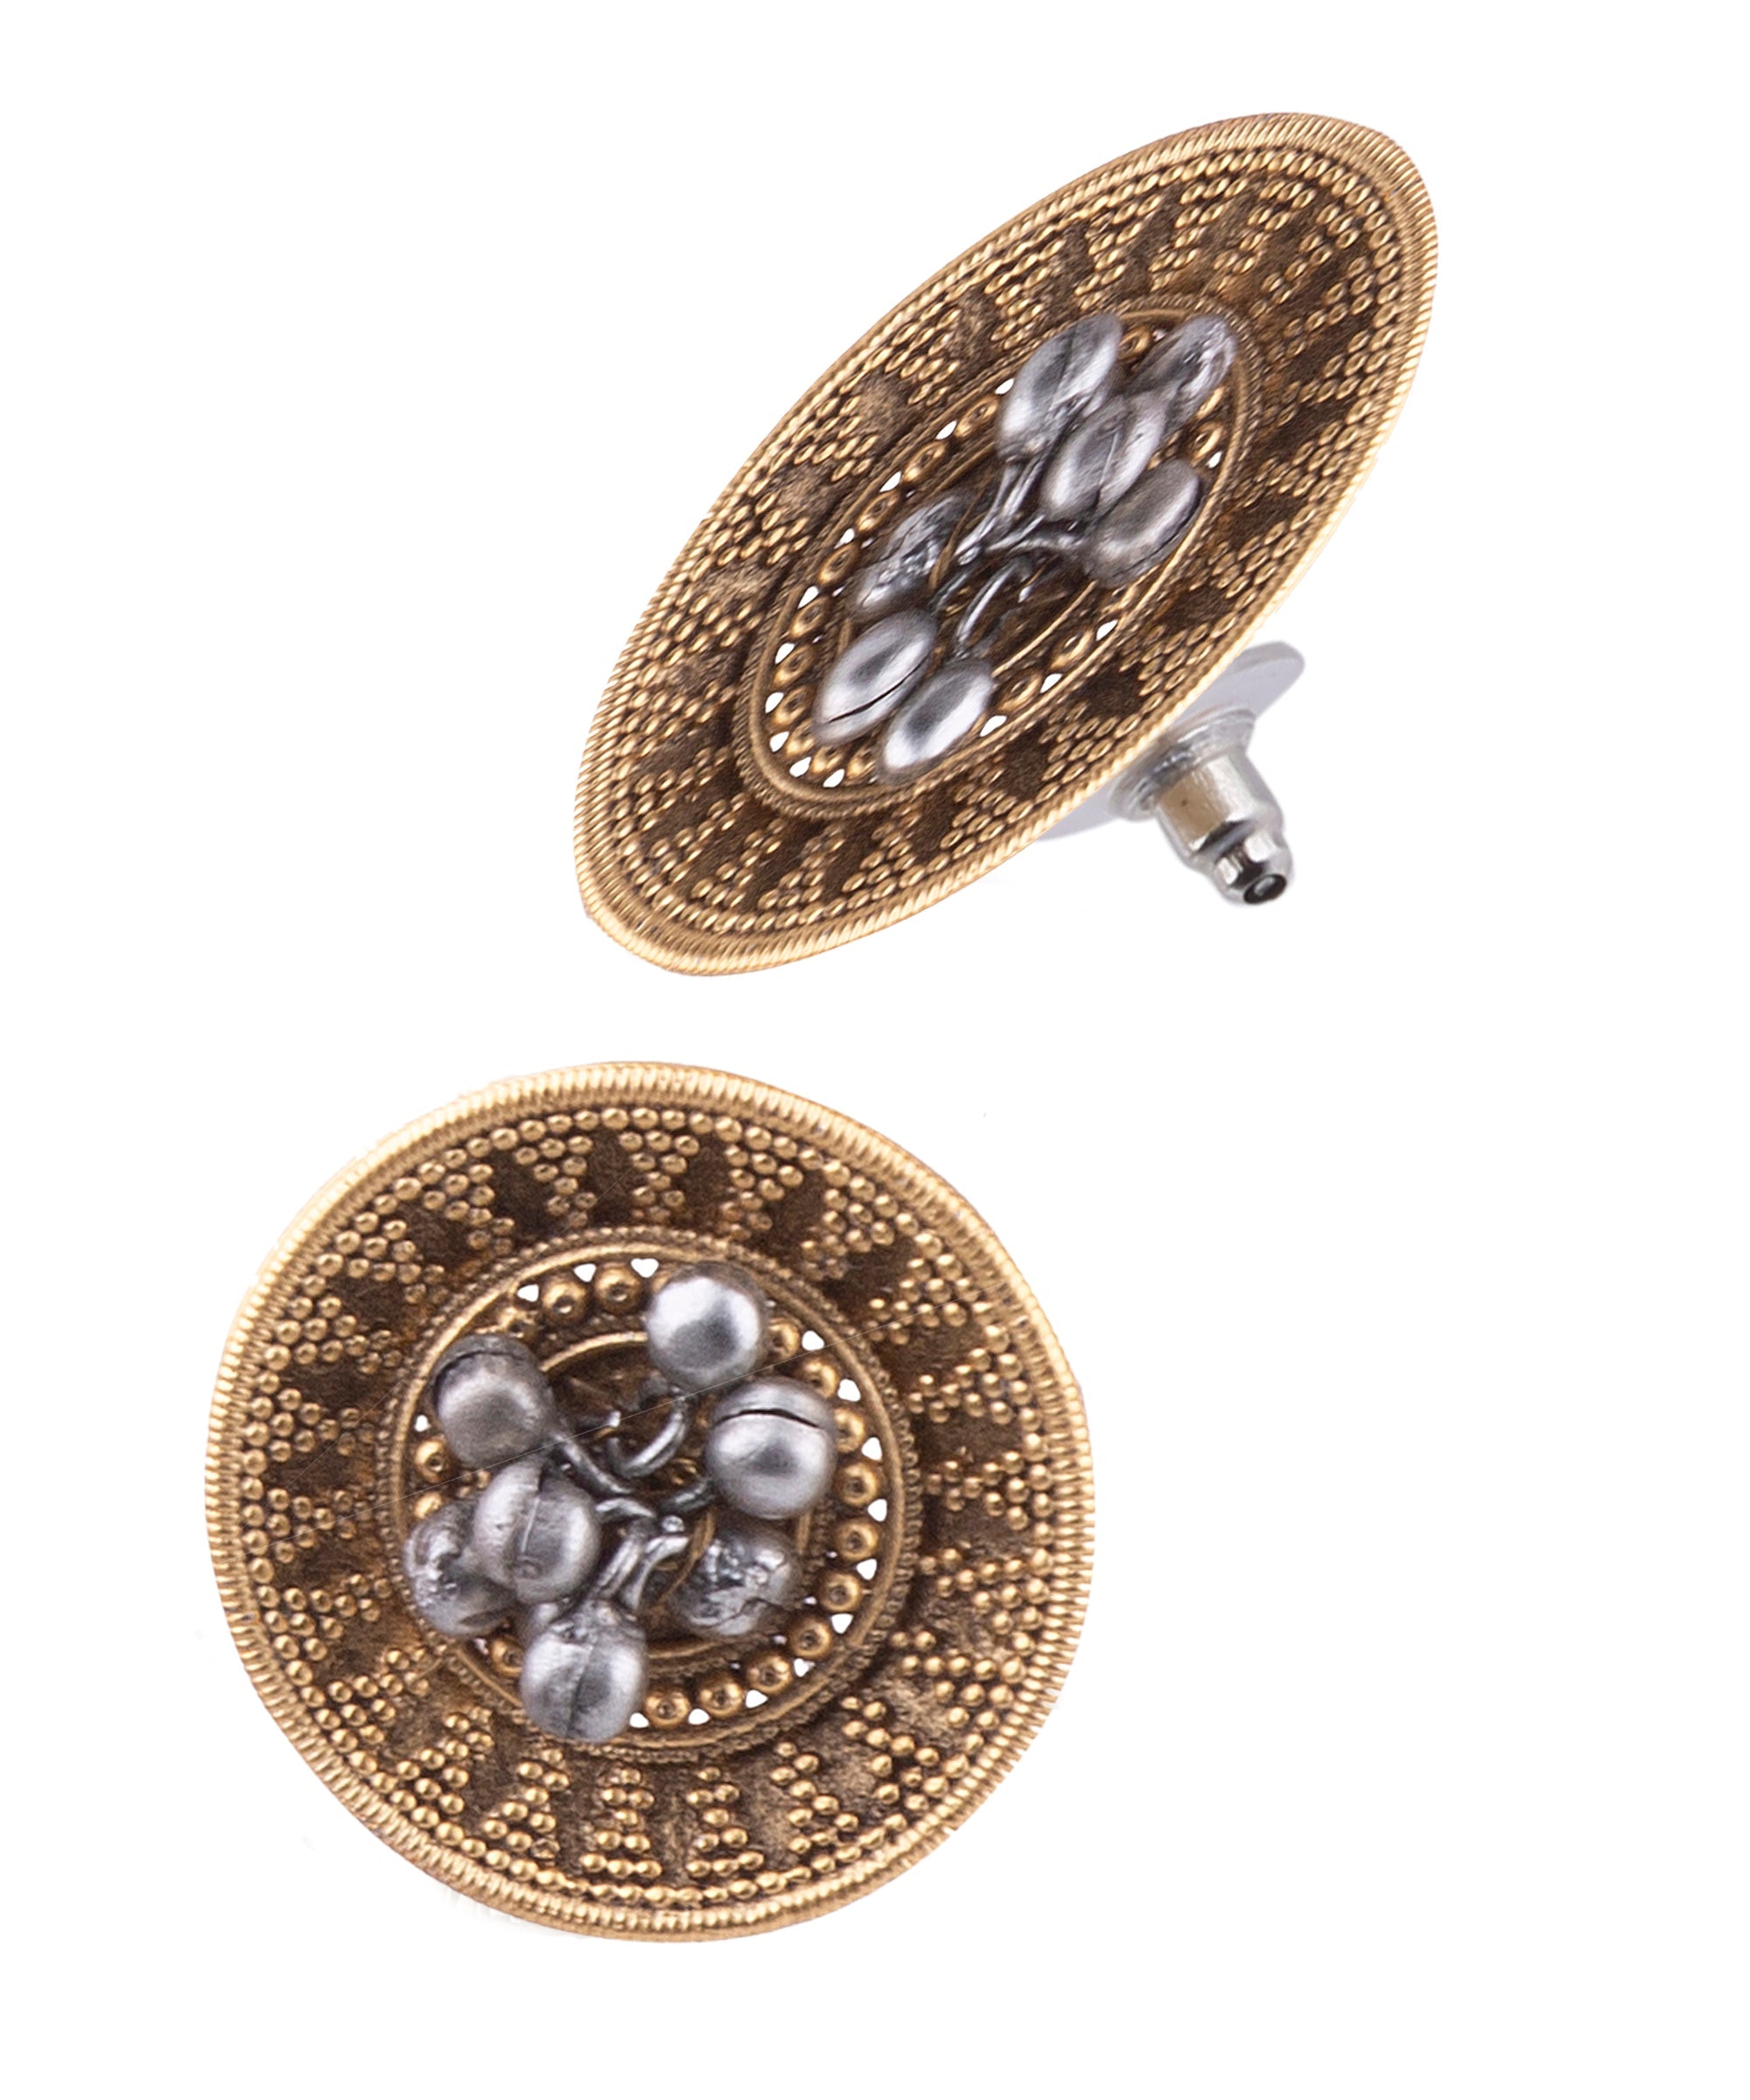 Gold Plated Cute Earrings 17793N